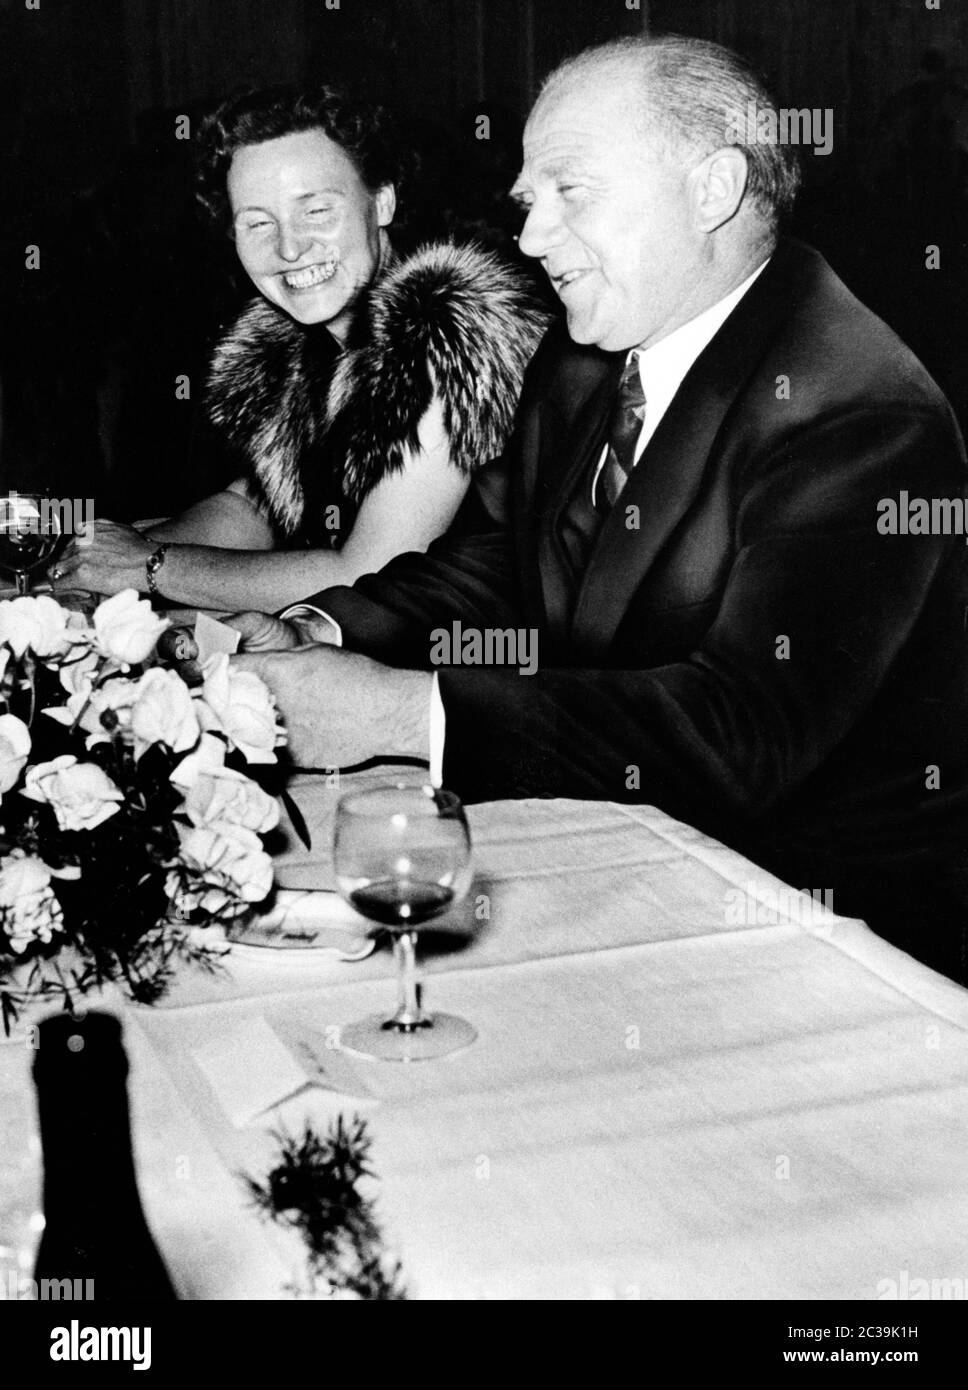 Le prix Nobel et physicien Werner Karl Heisenberg souriant lors d'une conversation à une fête. Une jeune femme s'assoit à côté de lui et sourit aussi. Photo non datée, vers 1954. Banque D'Images